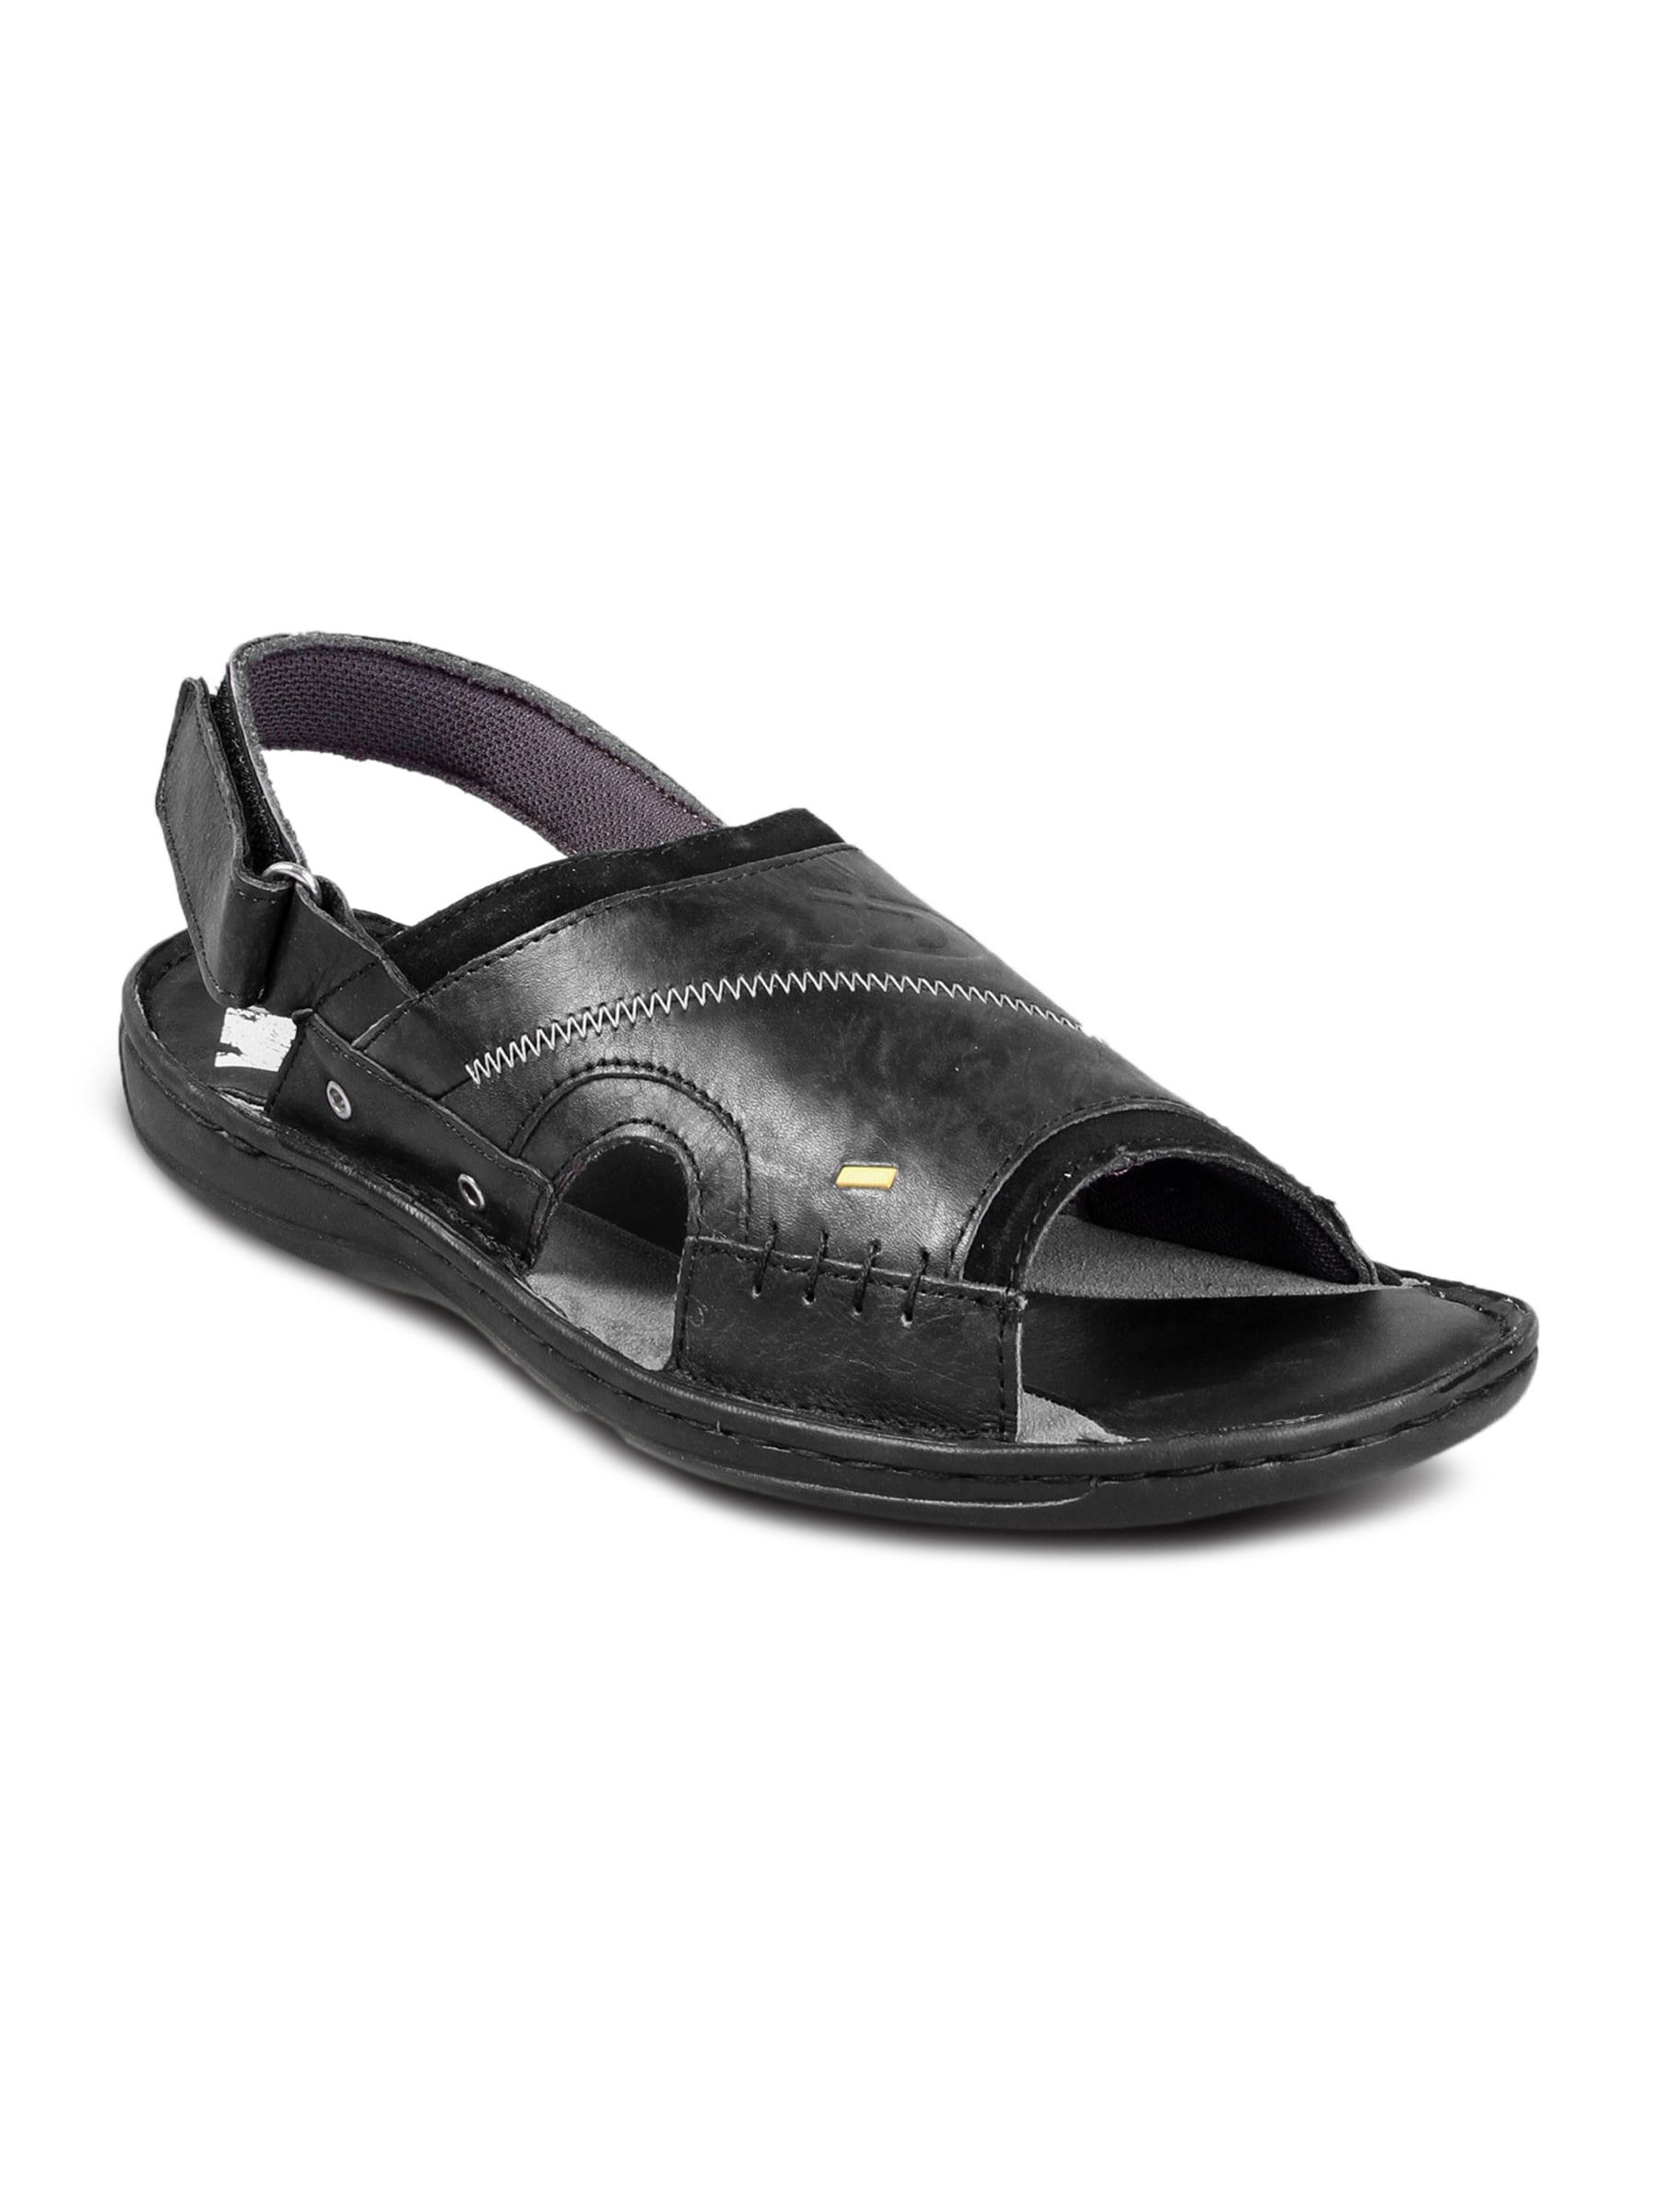 iD Men Casual Leather/Felt Charcoal Sandal